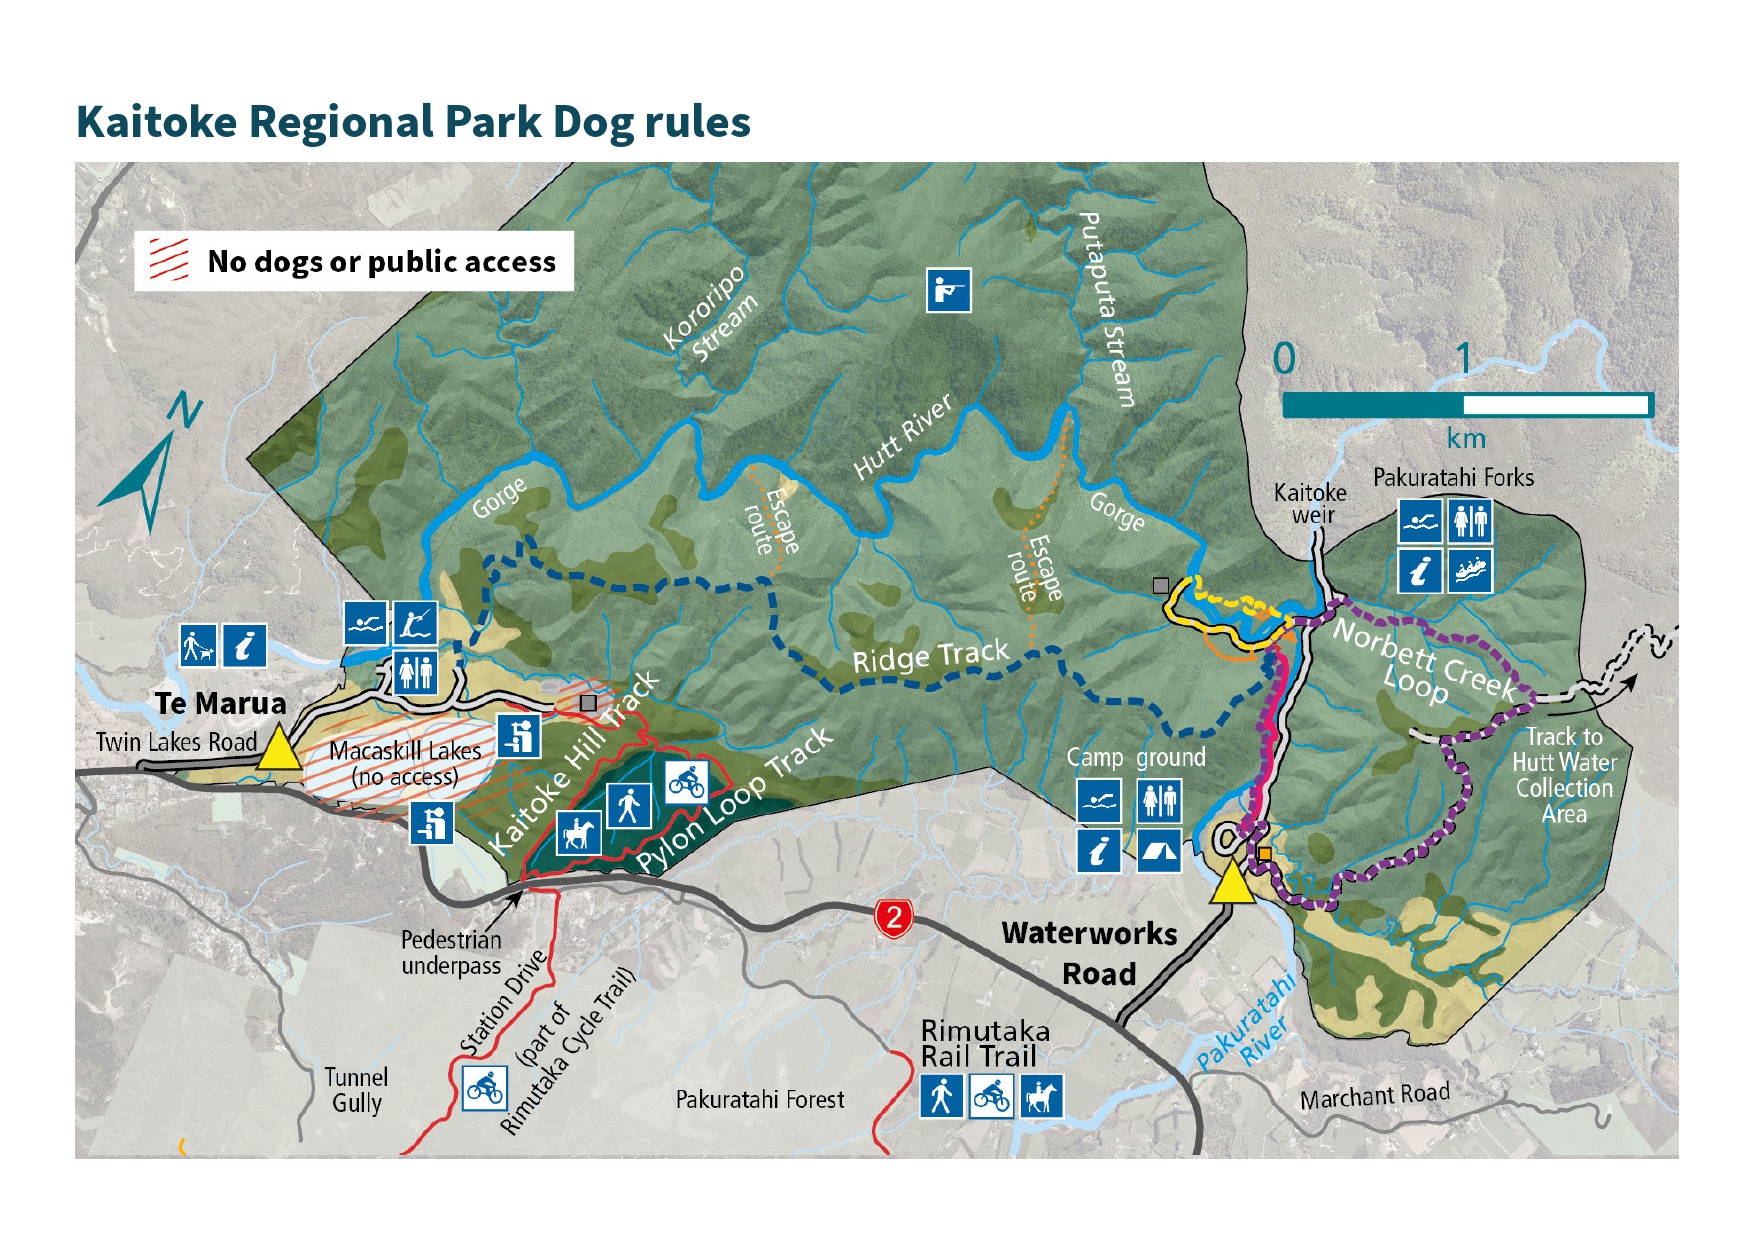 Kaitoke Regional Park Dog rules